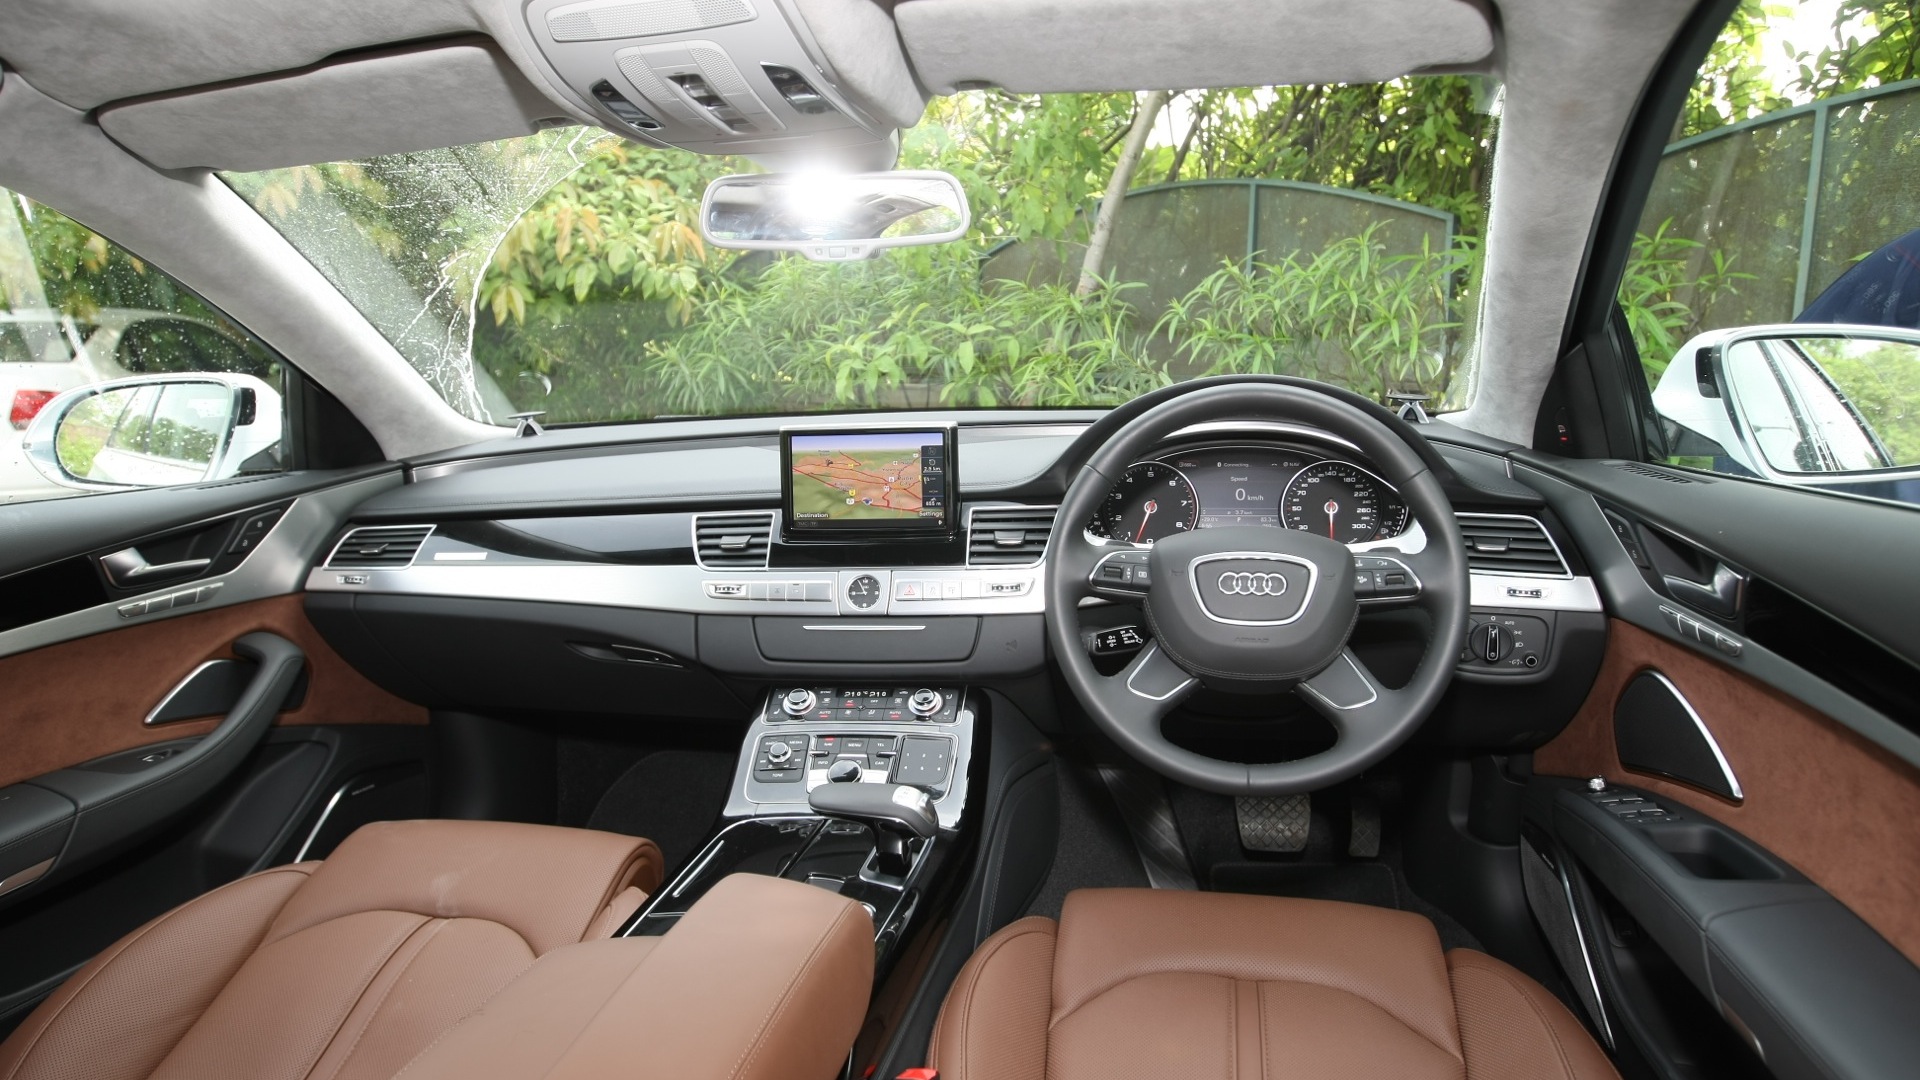 Audi-A8l-2012-6-3-FSI-Quattro-Compare